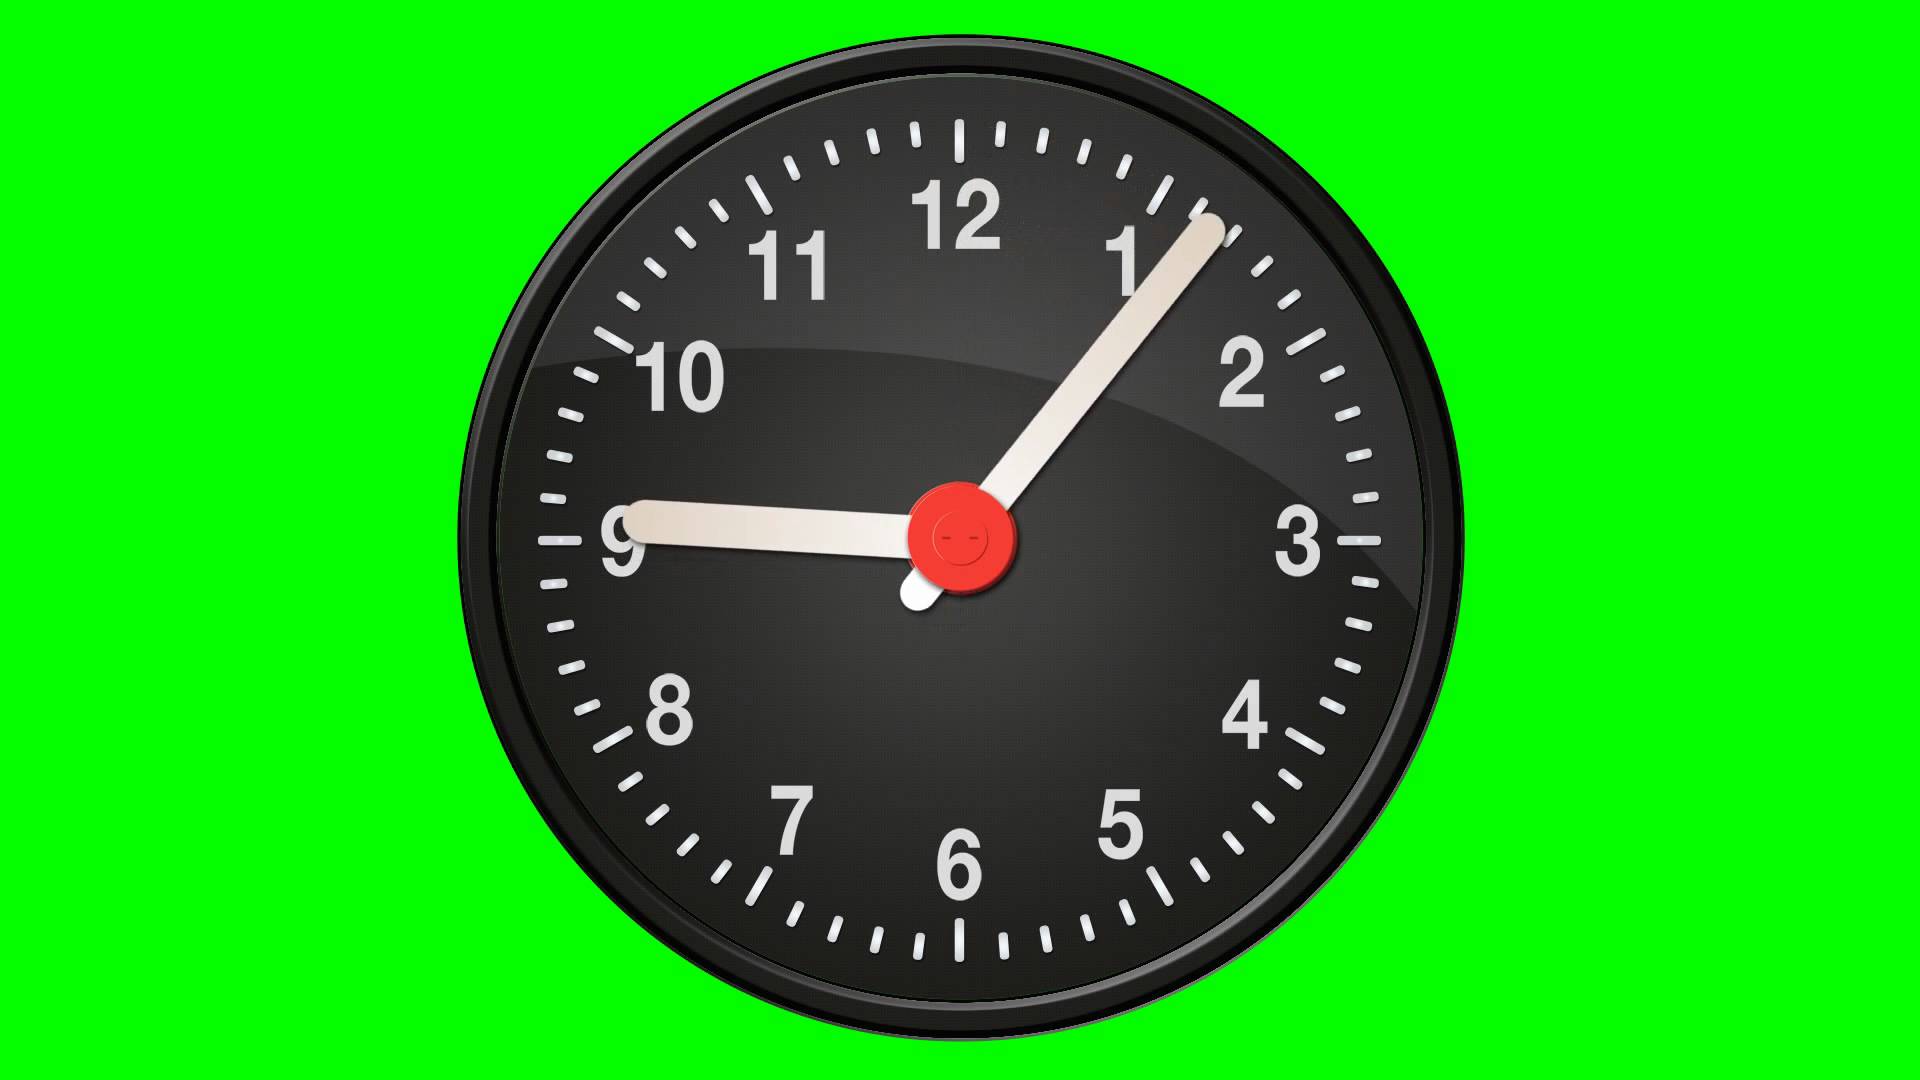 Таймер часы видео. Часы хромакей. Часы на зеленом фоне. Часы футаж. Часы для монтажа.